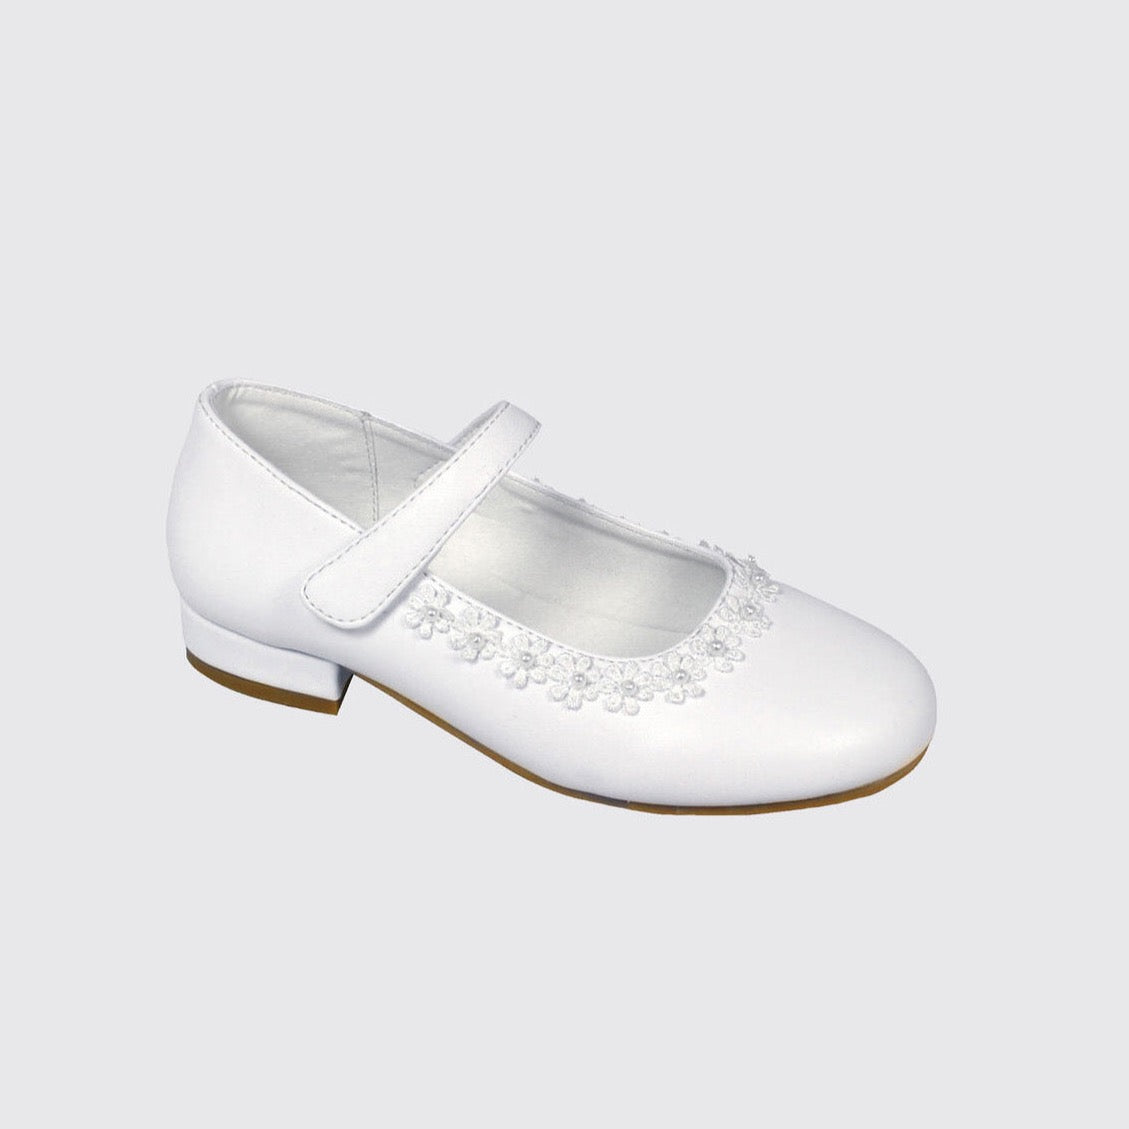 Dubarry Vivienne communion shoe white leather